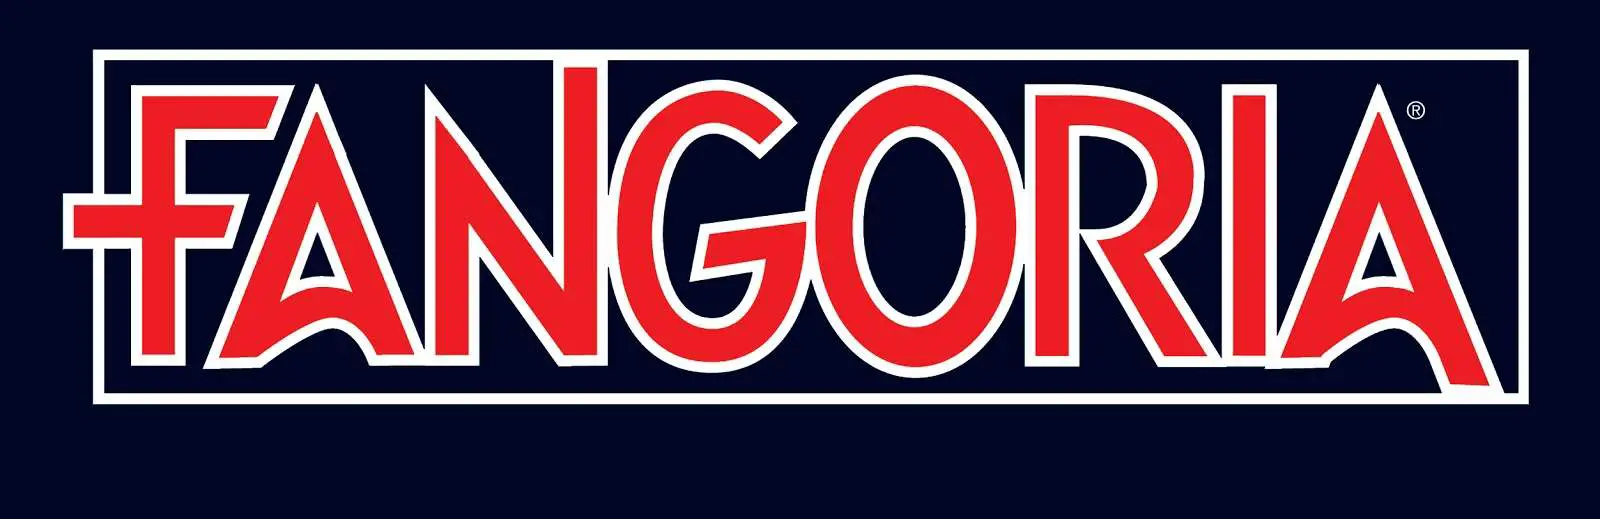 Fangoria logo